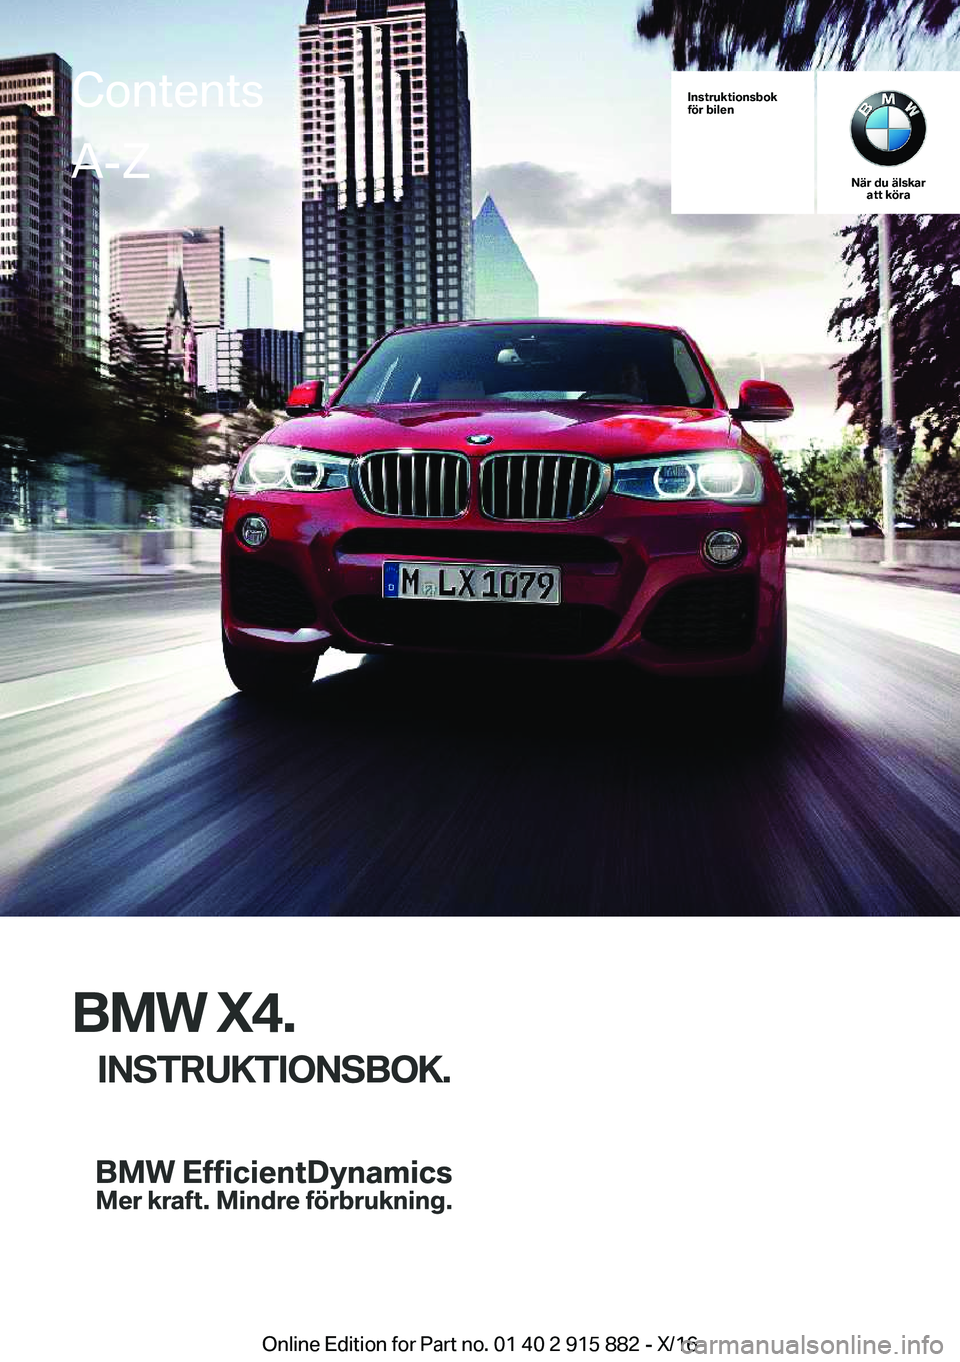 BMW X4 2017  InstruktionsbÖcker (in Swedish) �I�n�s�t�r�u�k�t�i�o�n�s�b�o�k
�f�